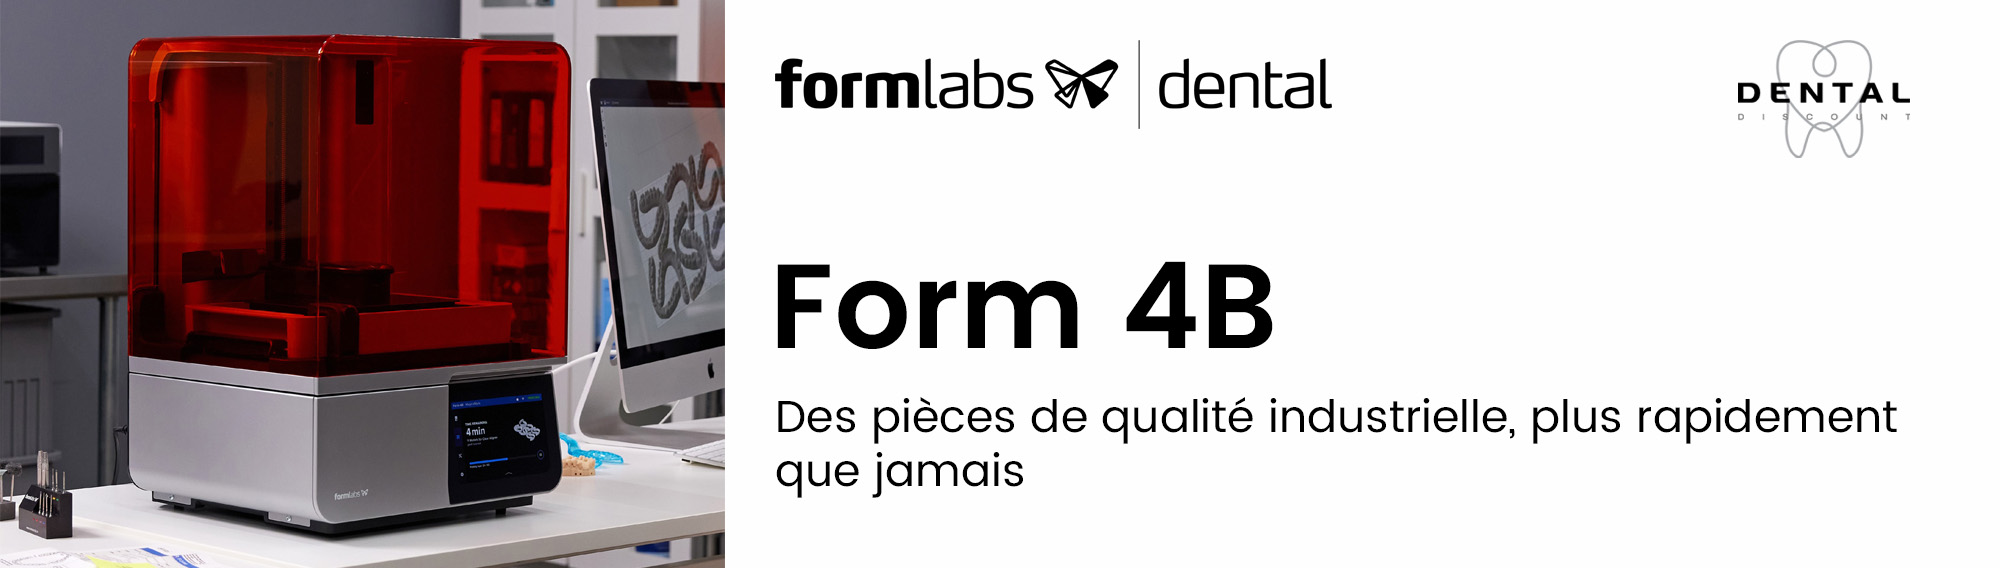 Lancement de la Form 4B de Formlabs